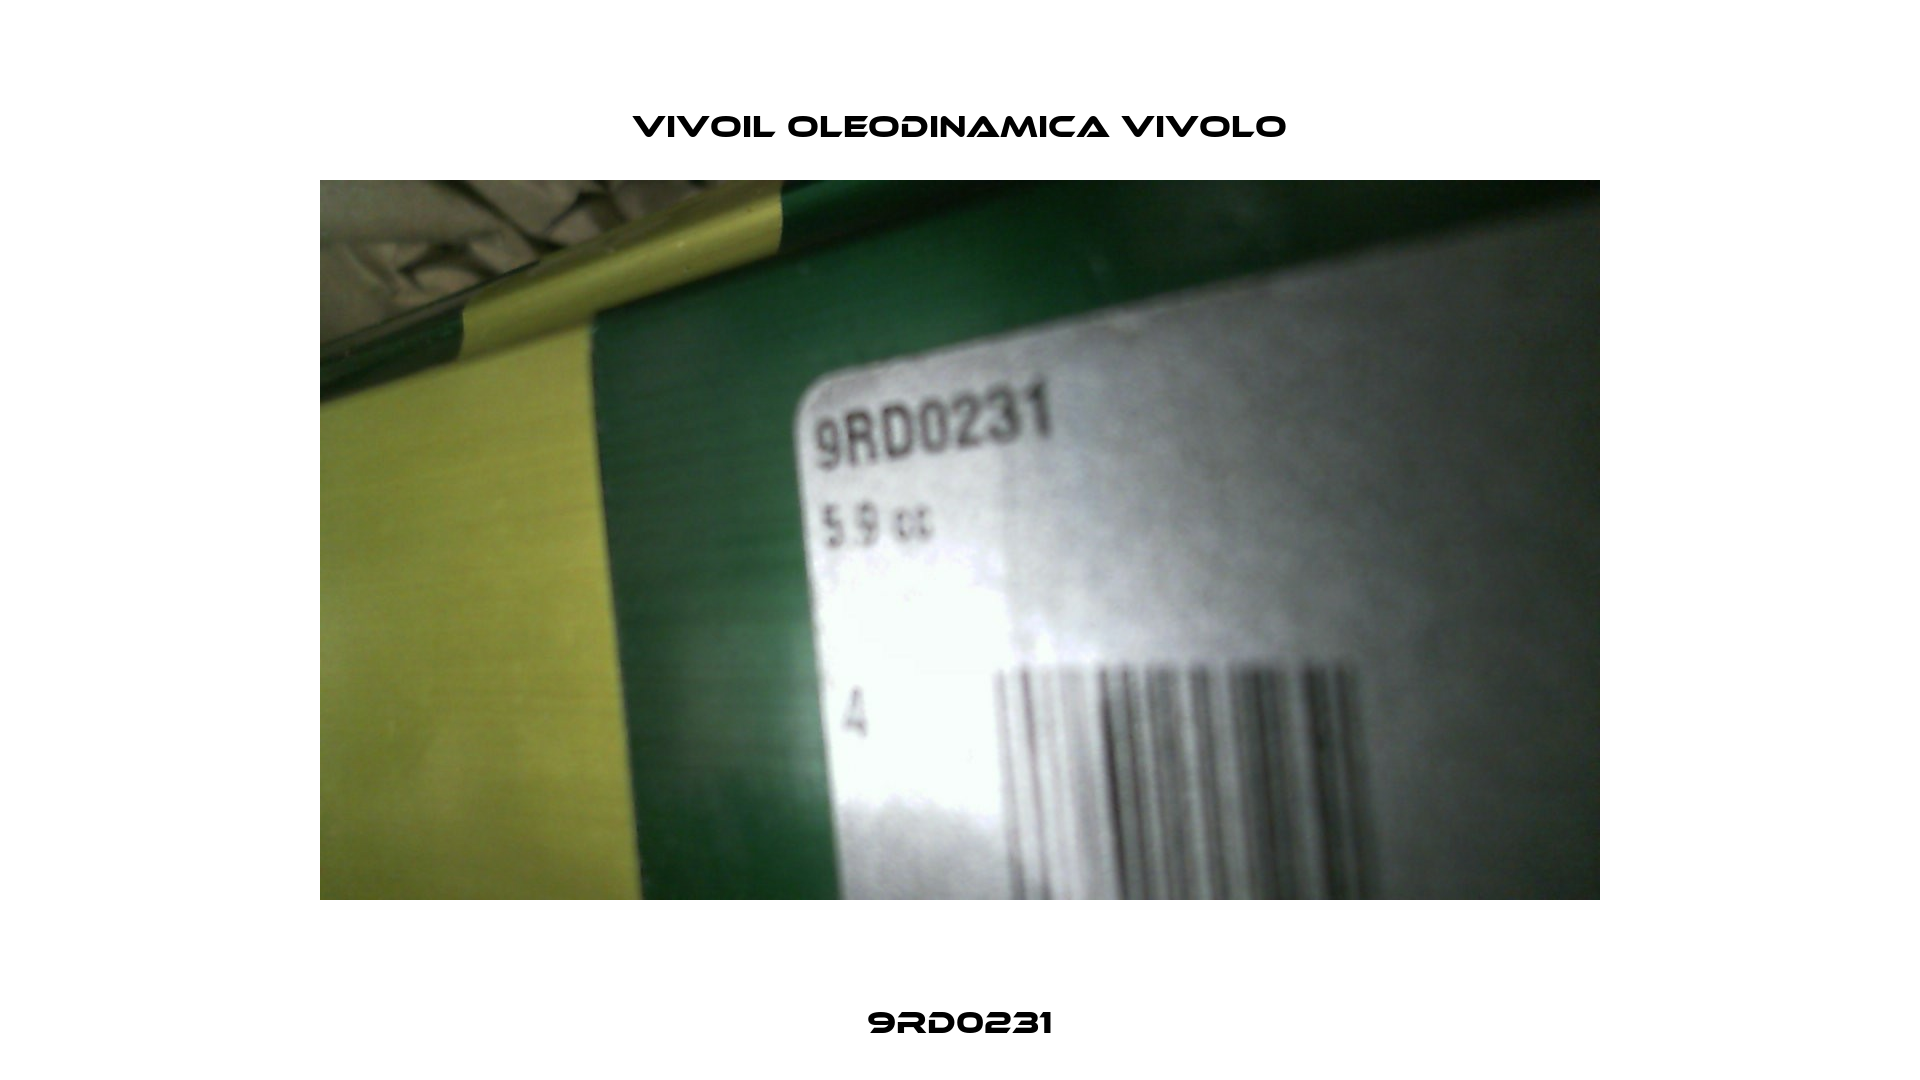 9RD0231 Vivoil Oleodinamica Vivolo